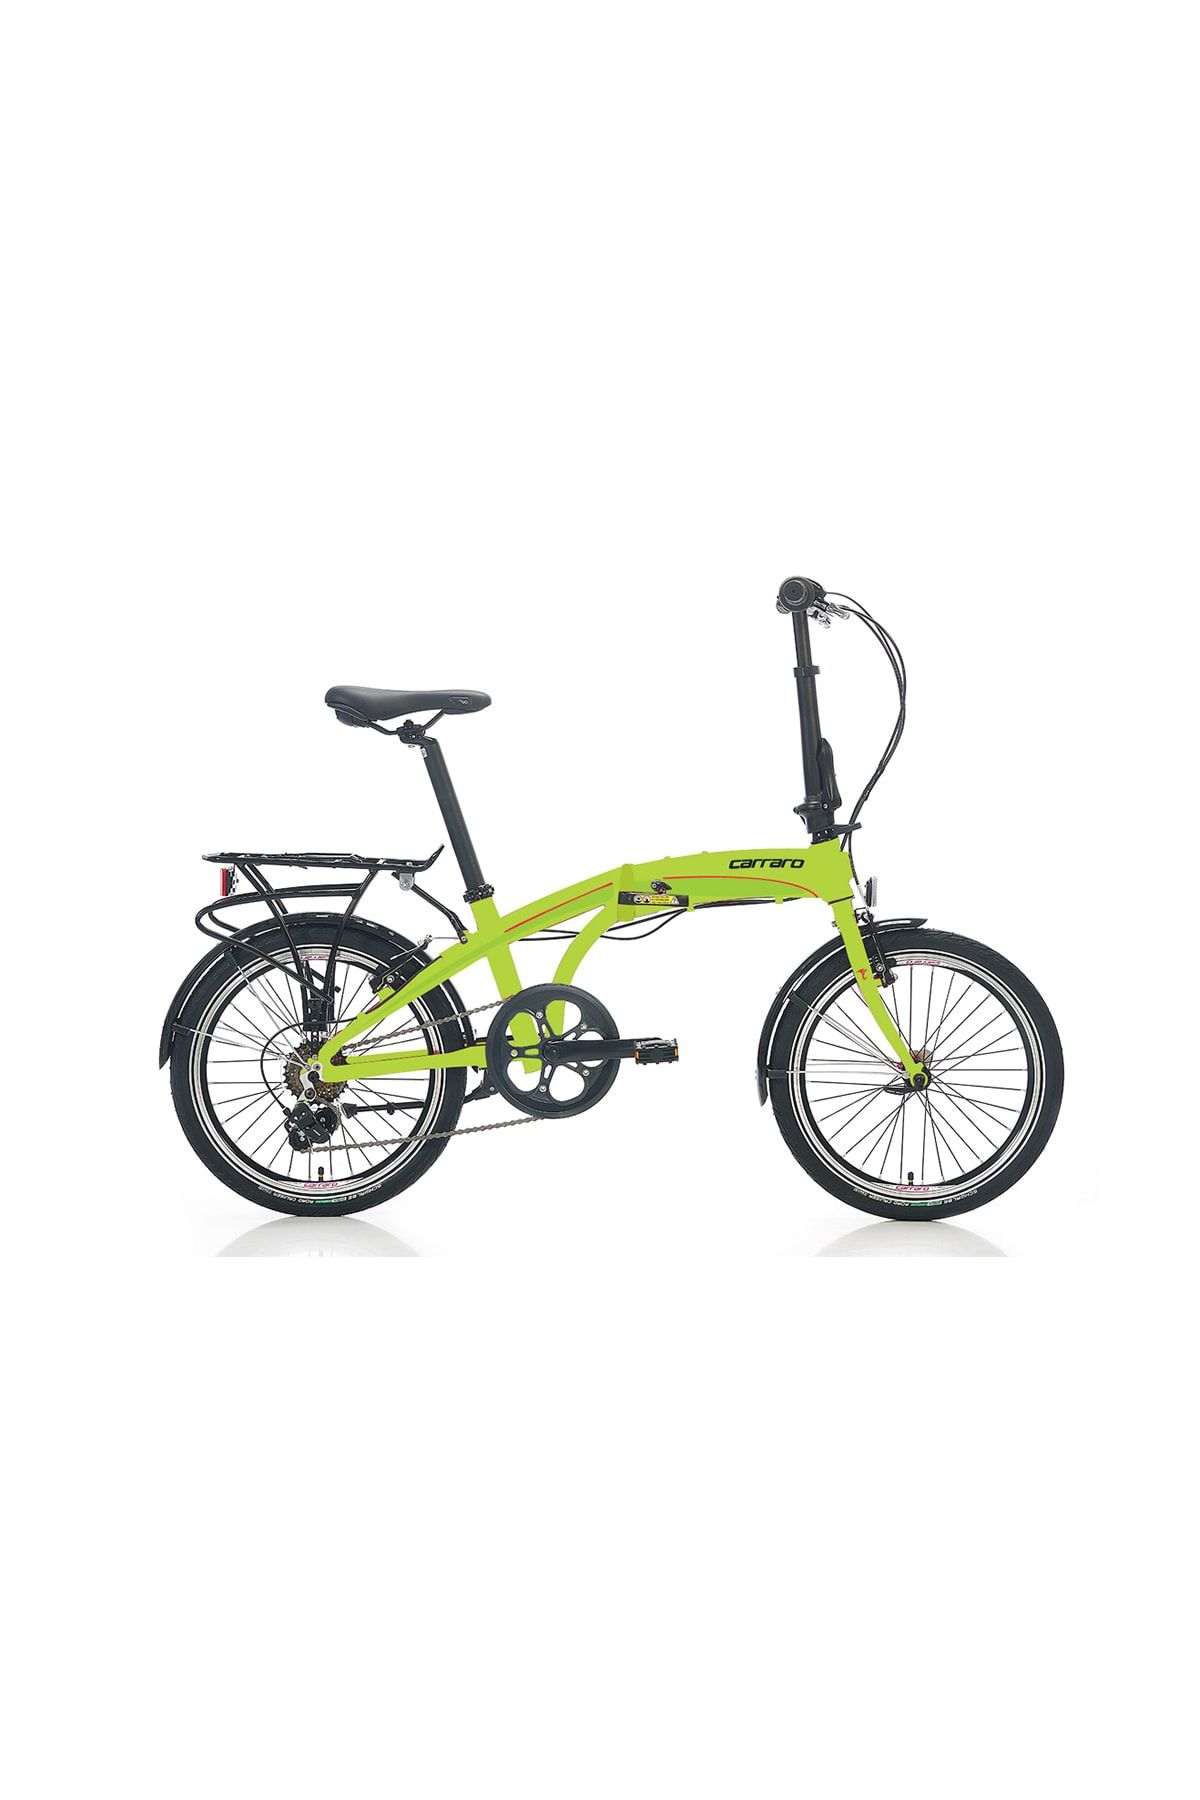 Carraro Flexi 106 20 Jant Katlanabilir Bisiklet Lime Yeşil Siyah Kırmızı